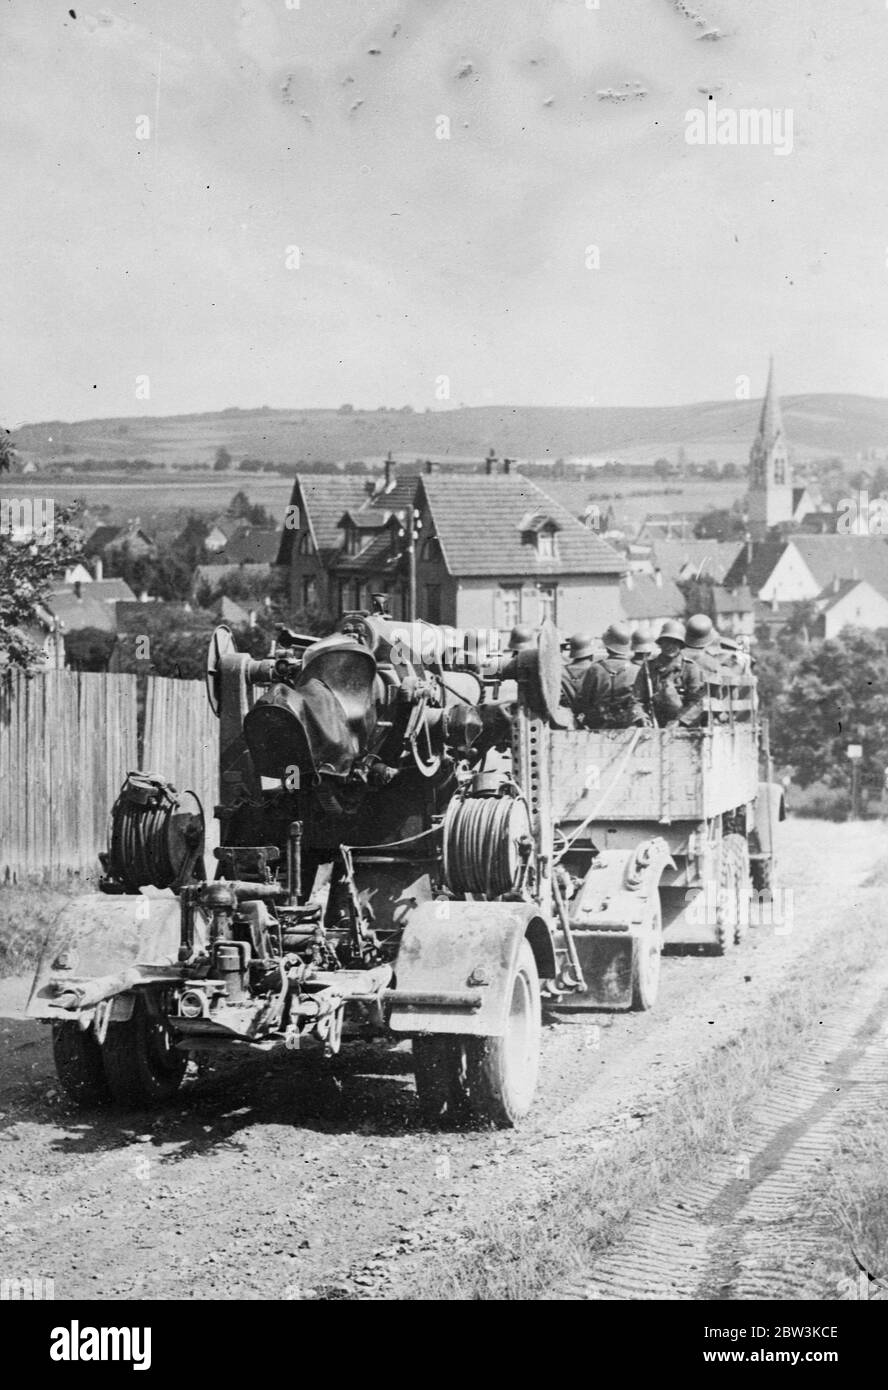 L'artiglieria tedesca viene sottoposta ad una formazione annuale a Jüterbog utilizzando munizioni in tempo reale per la pratica thri . La foto mostra un canone tedesco di artiglieria a lungo raggio trainato dal suo equipaggio di armi . 10 agosto 1935 Foto Stock